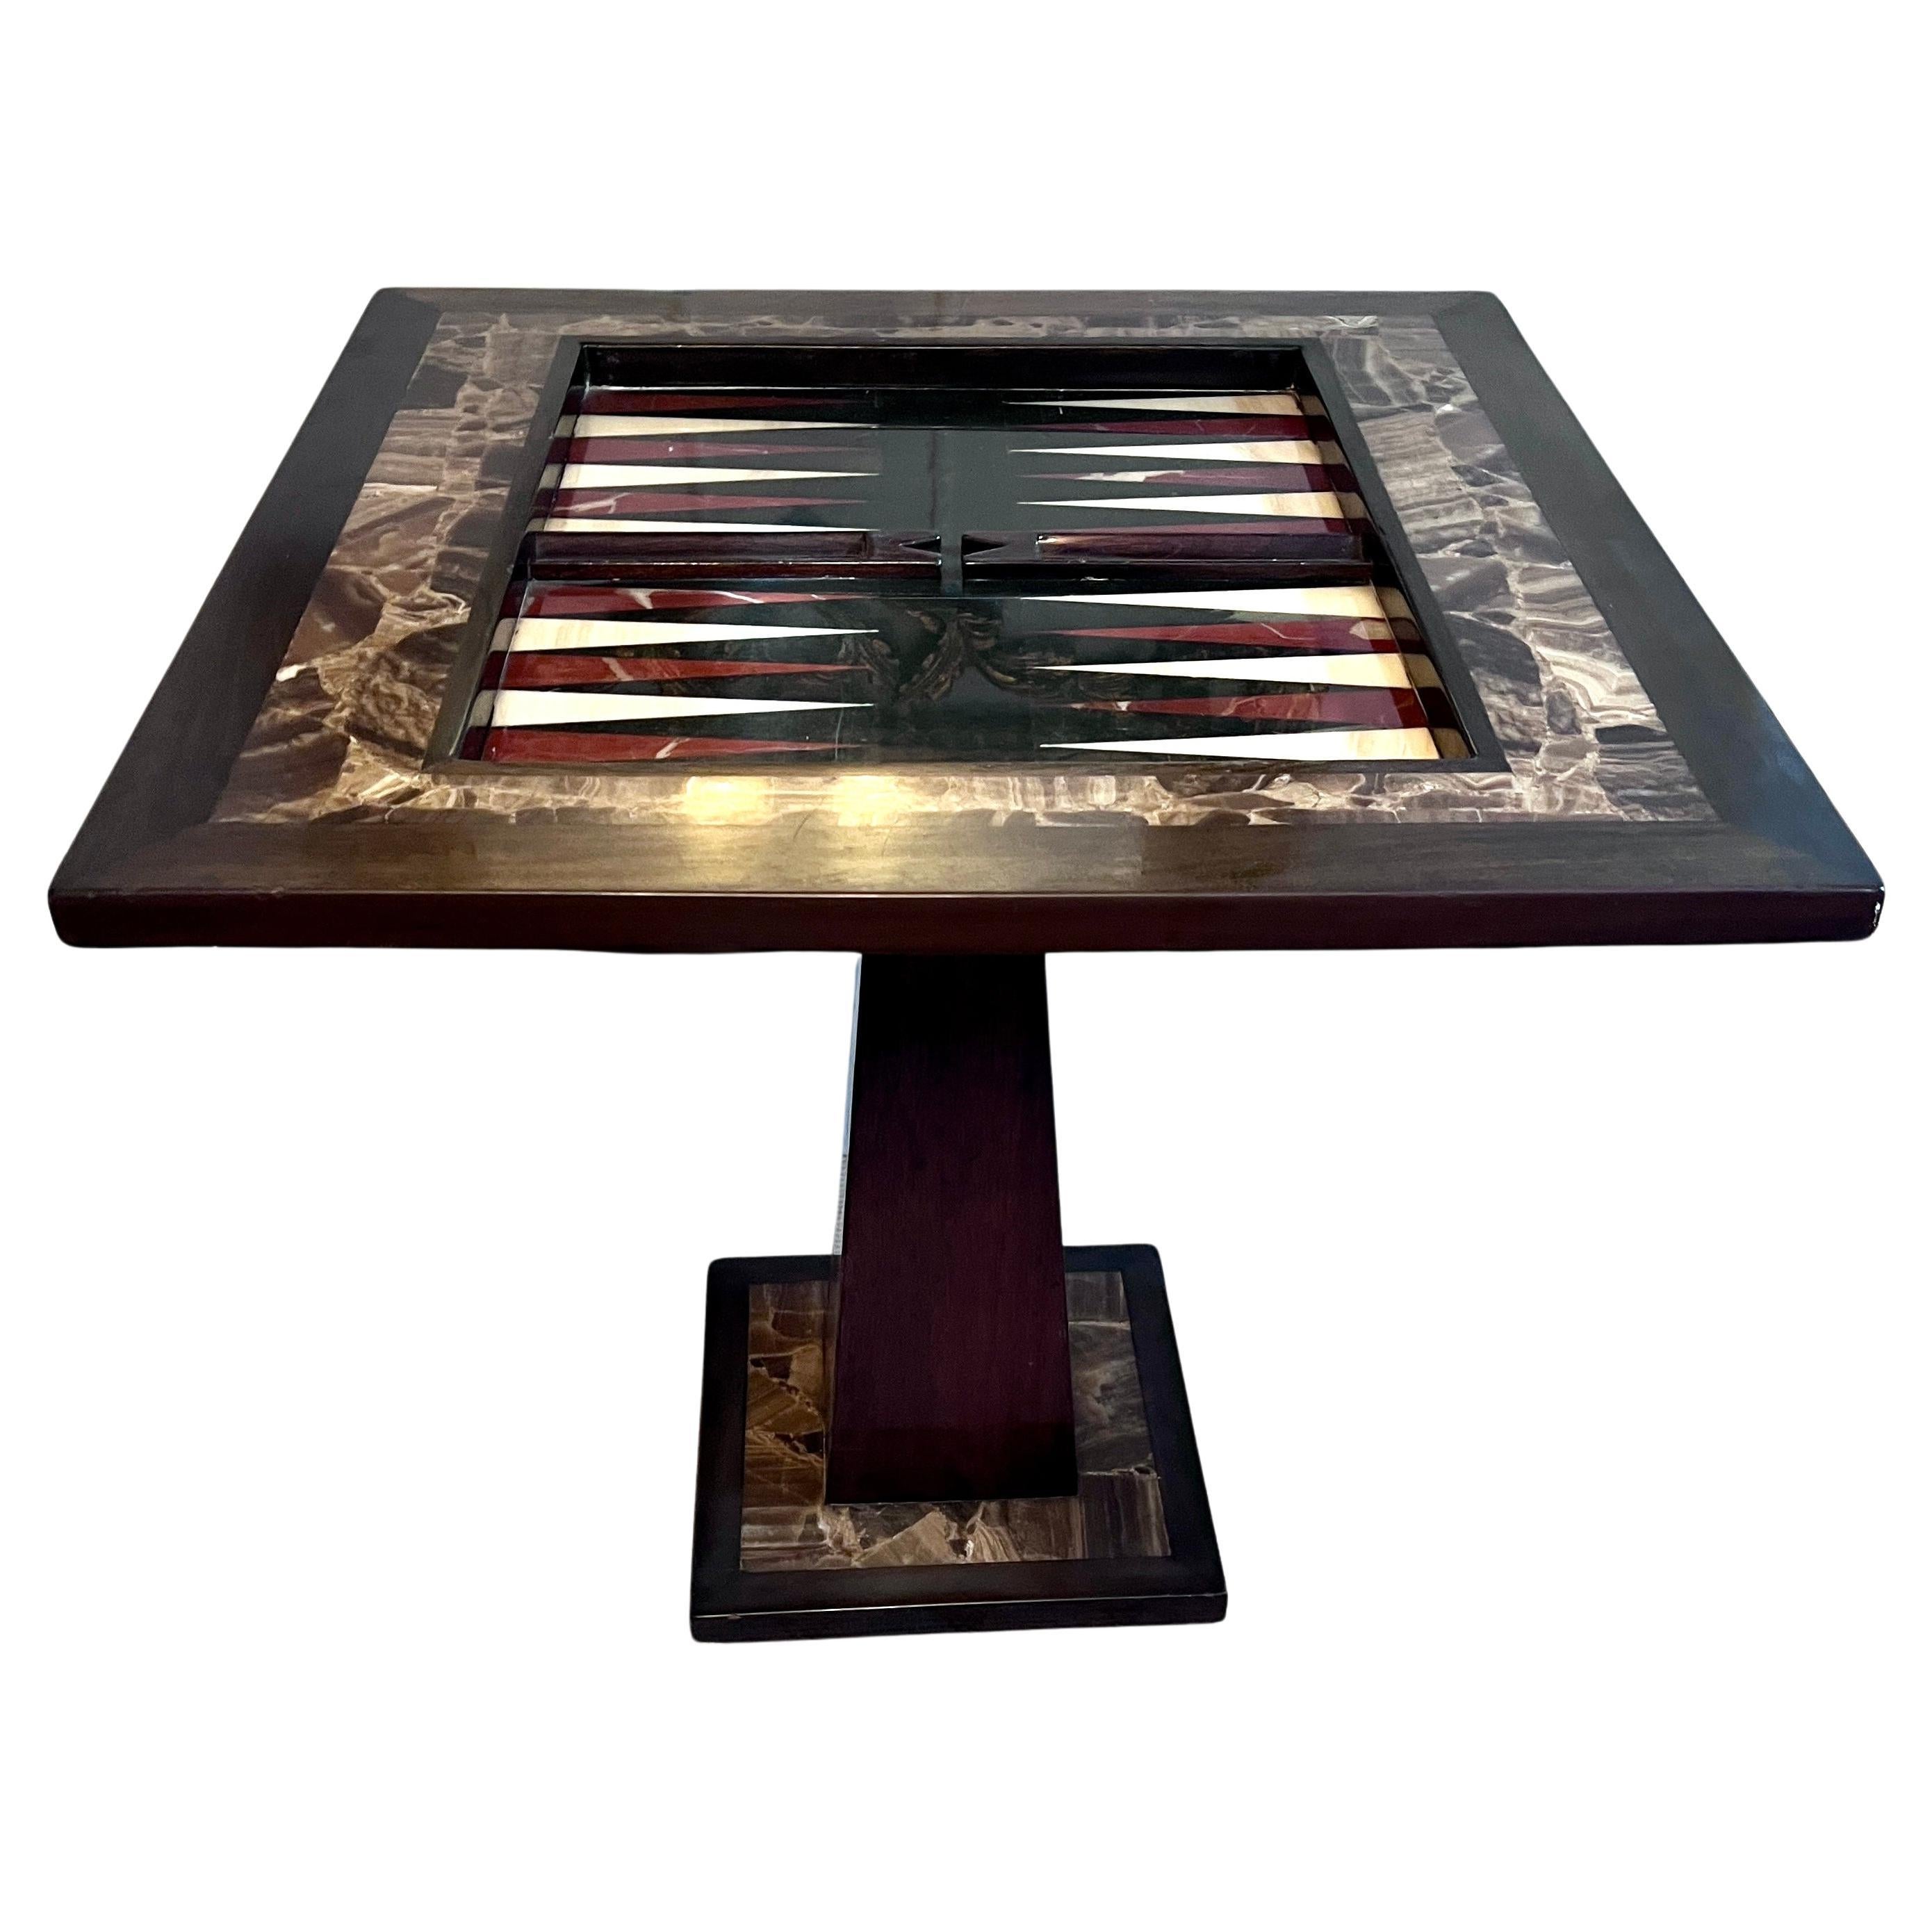 Table de jeu attribuée à Arturo Pani en noyer onyx avec échecs, dames et backgammon en vente